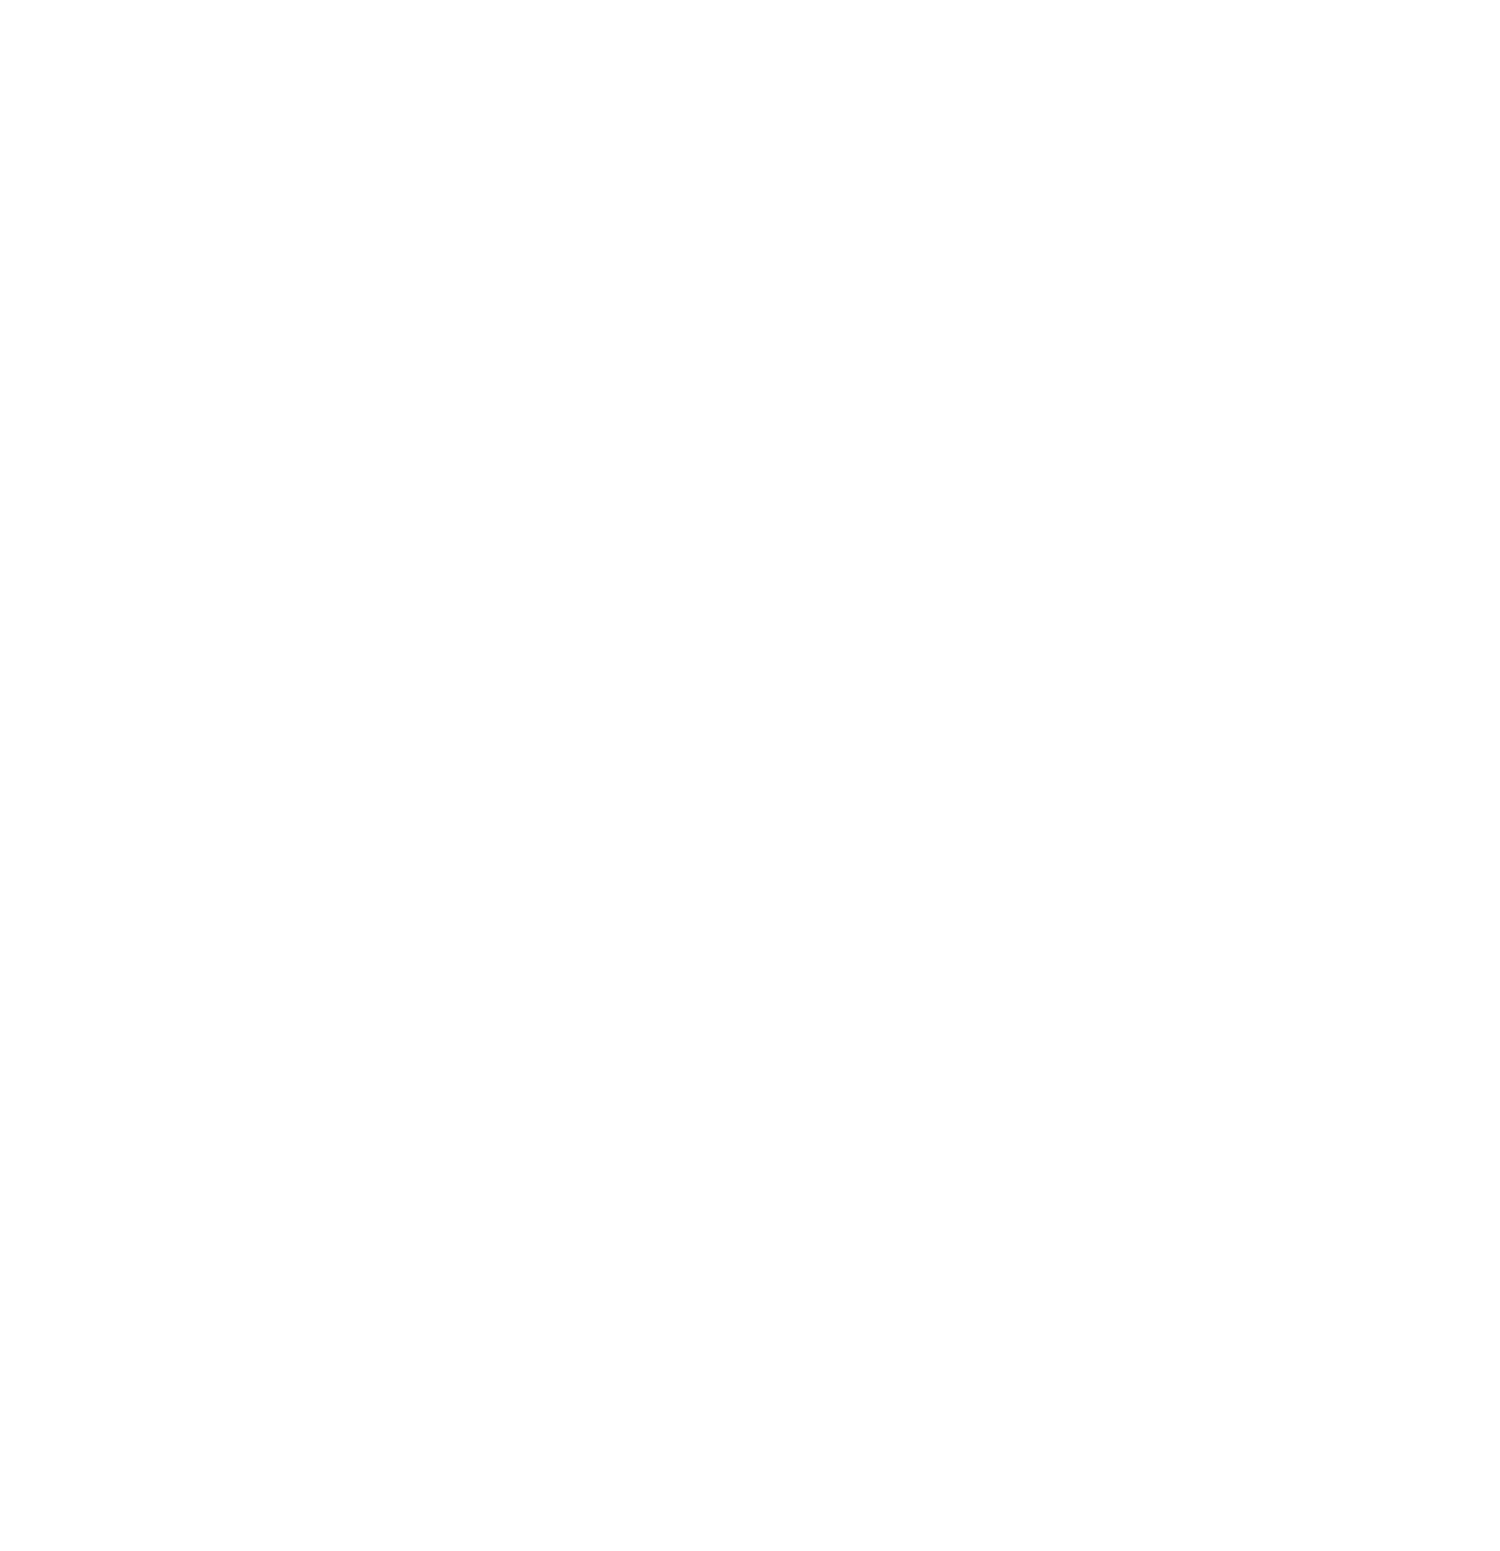 WriterFest Nashville